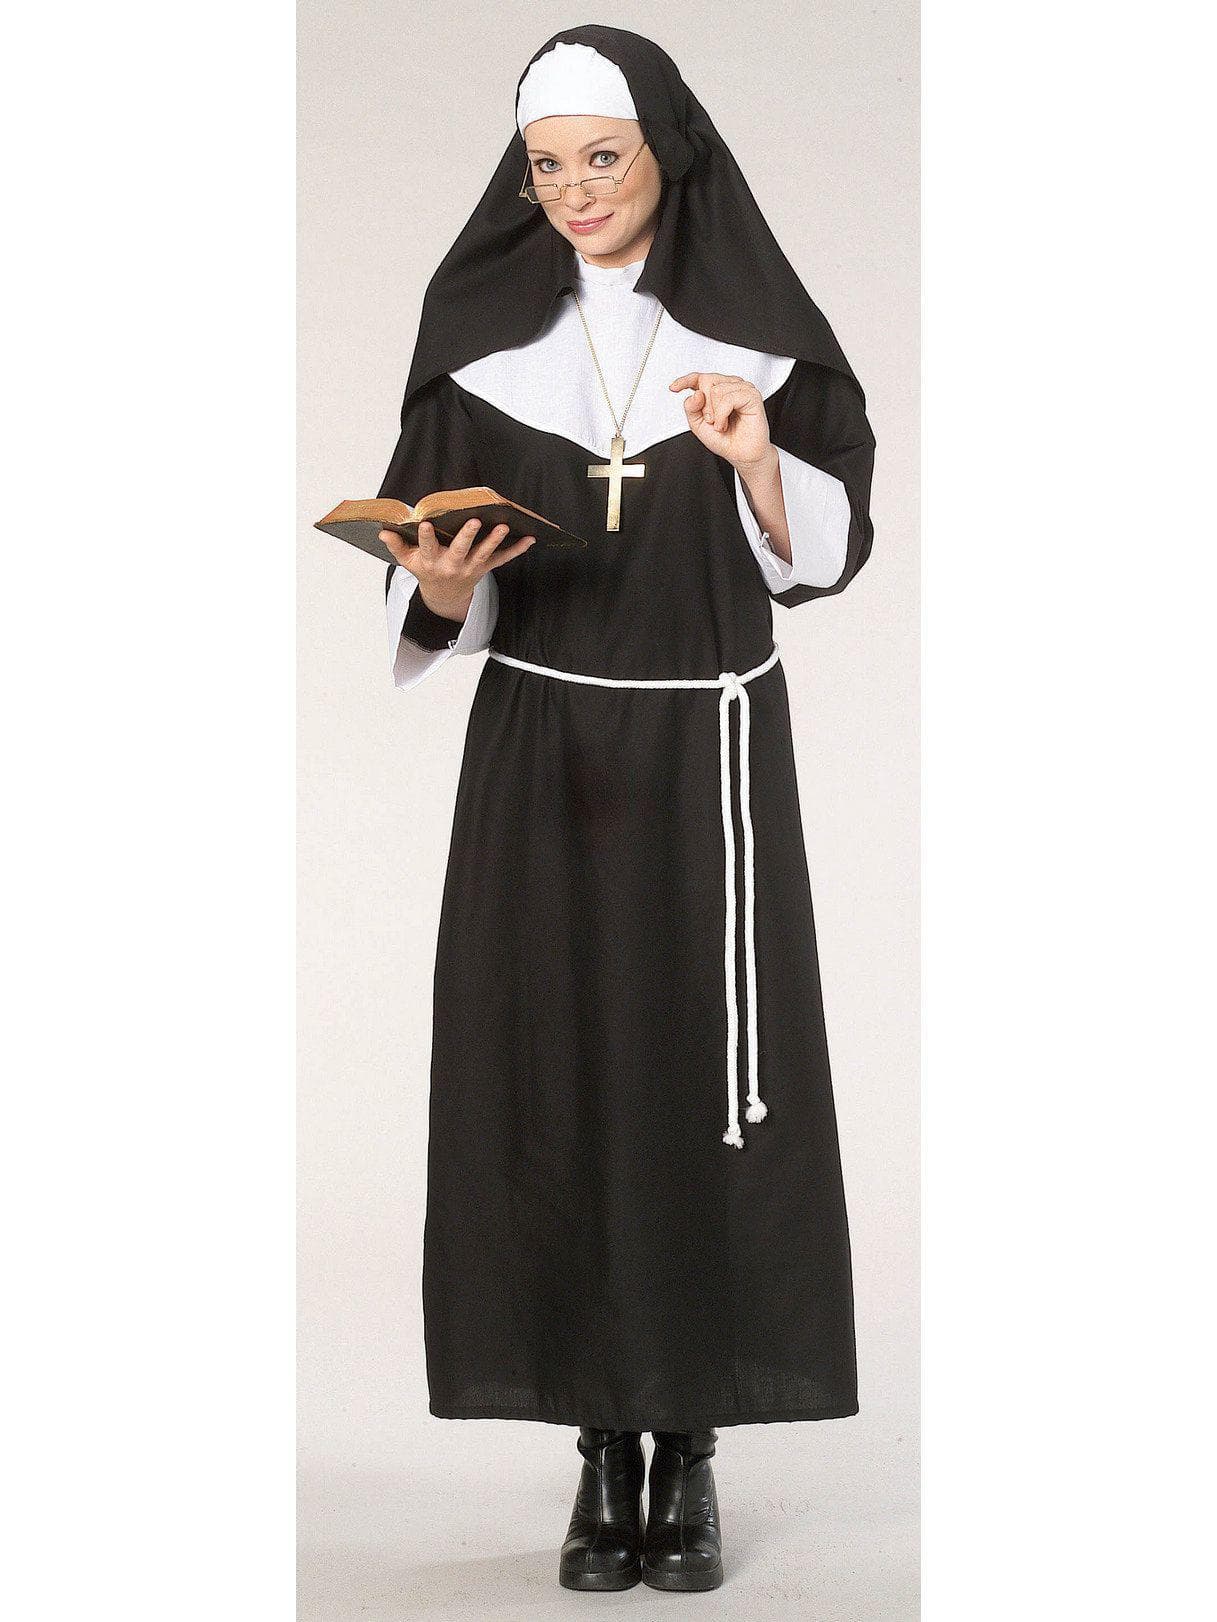 Women's Nun Costume - Deluxe - costumes.com